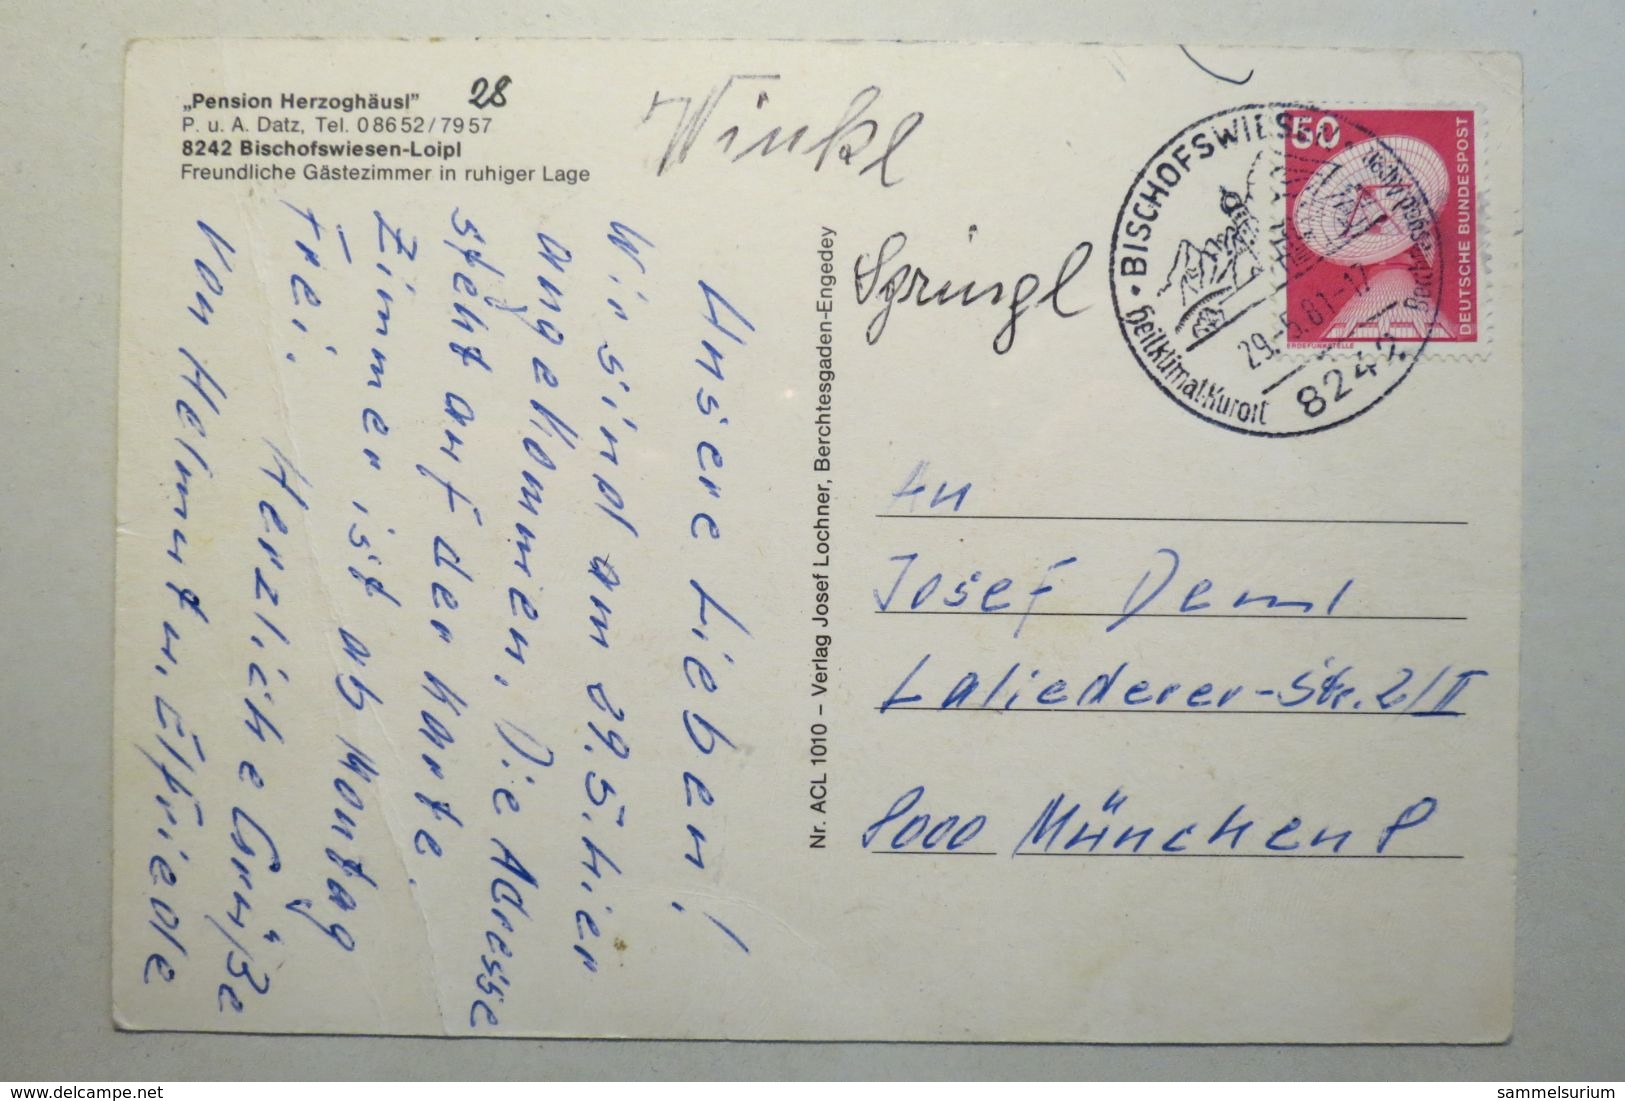 (11/10/70) Postkarte/AK "Bischofswiesen-Loipl" Mehrbildkarte Mit 5 Ansichten Der Pension Herzoghäusl - Bischofswiesen